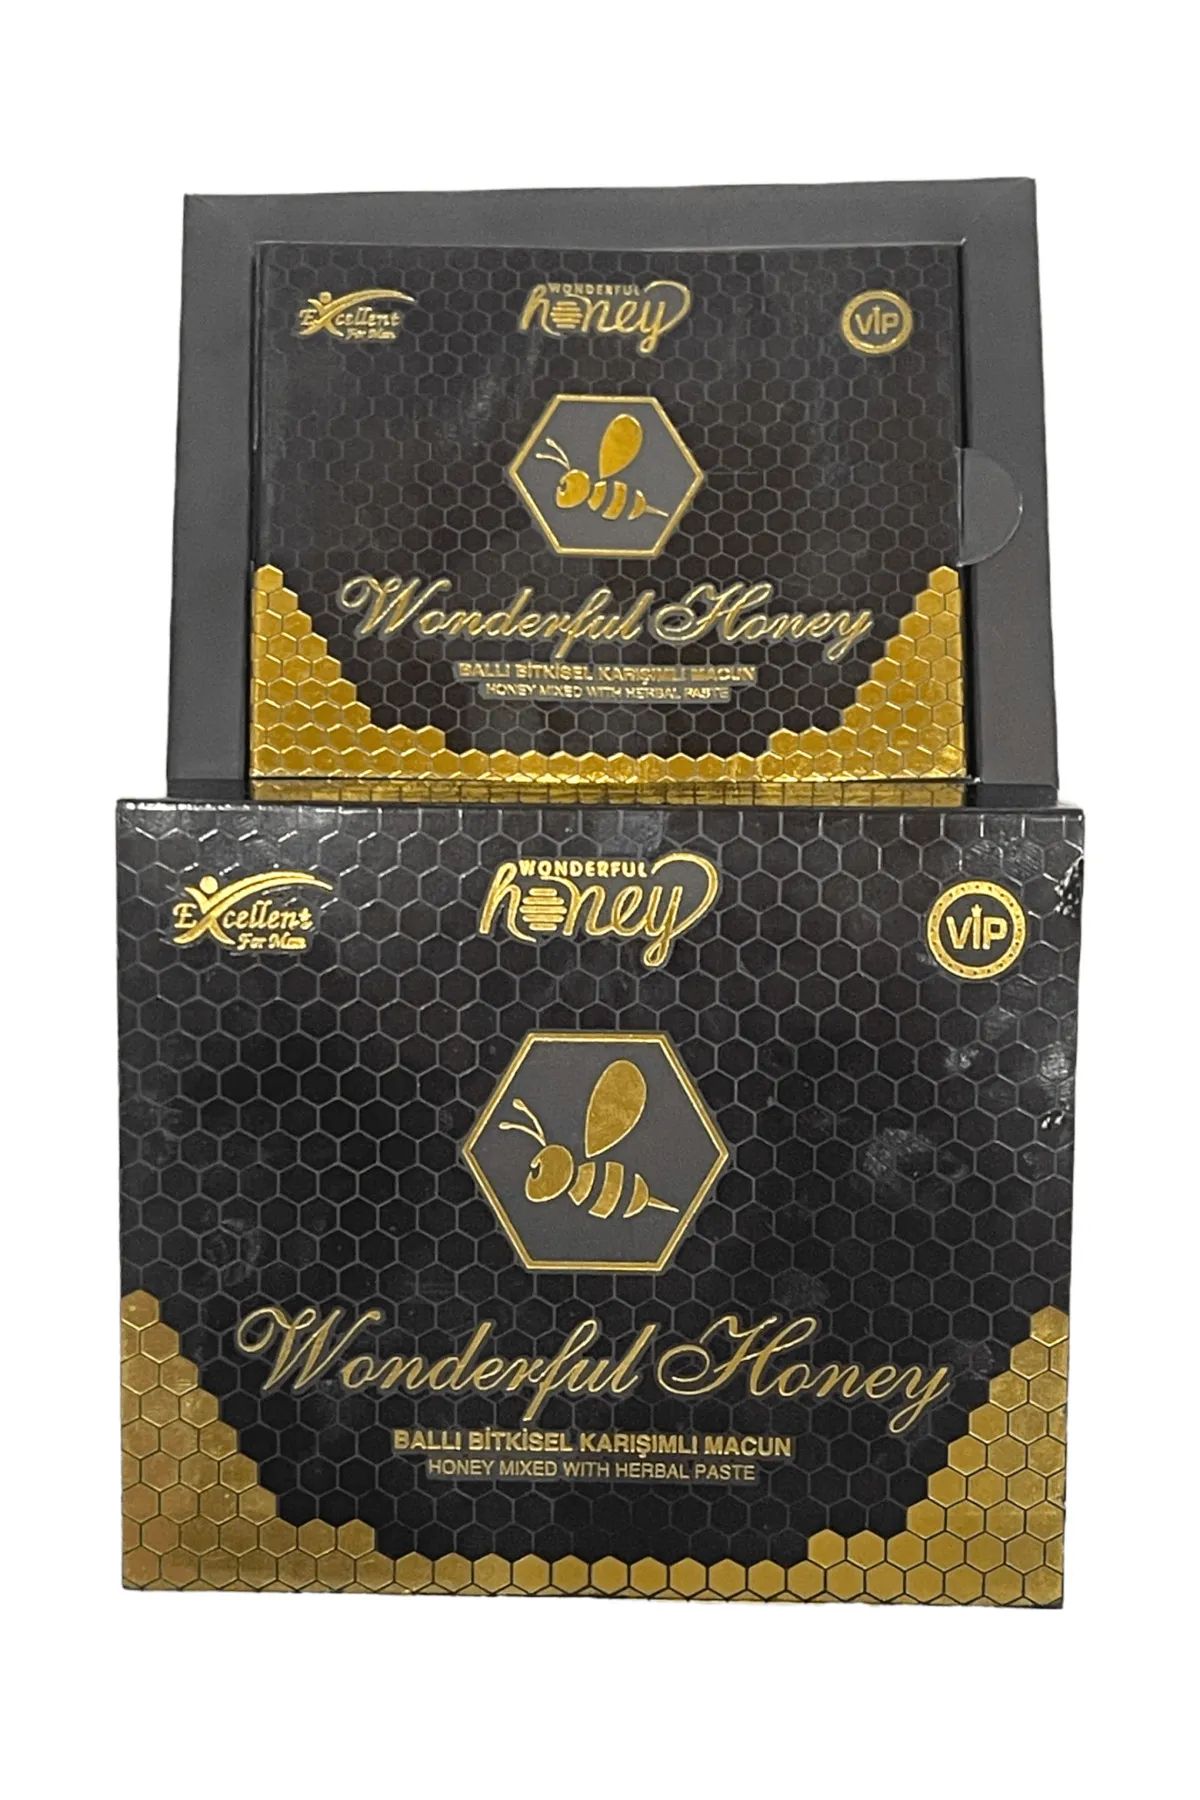 Wonderful Honey Ballı Bitkisel Karışım 15 gr X 12 Şaset